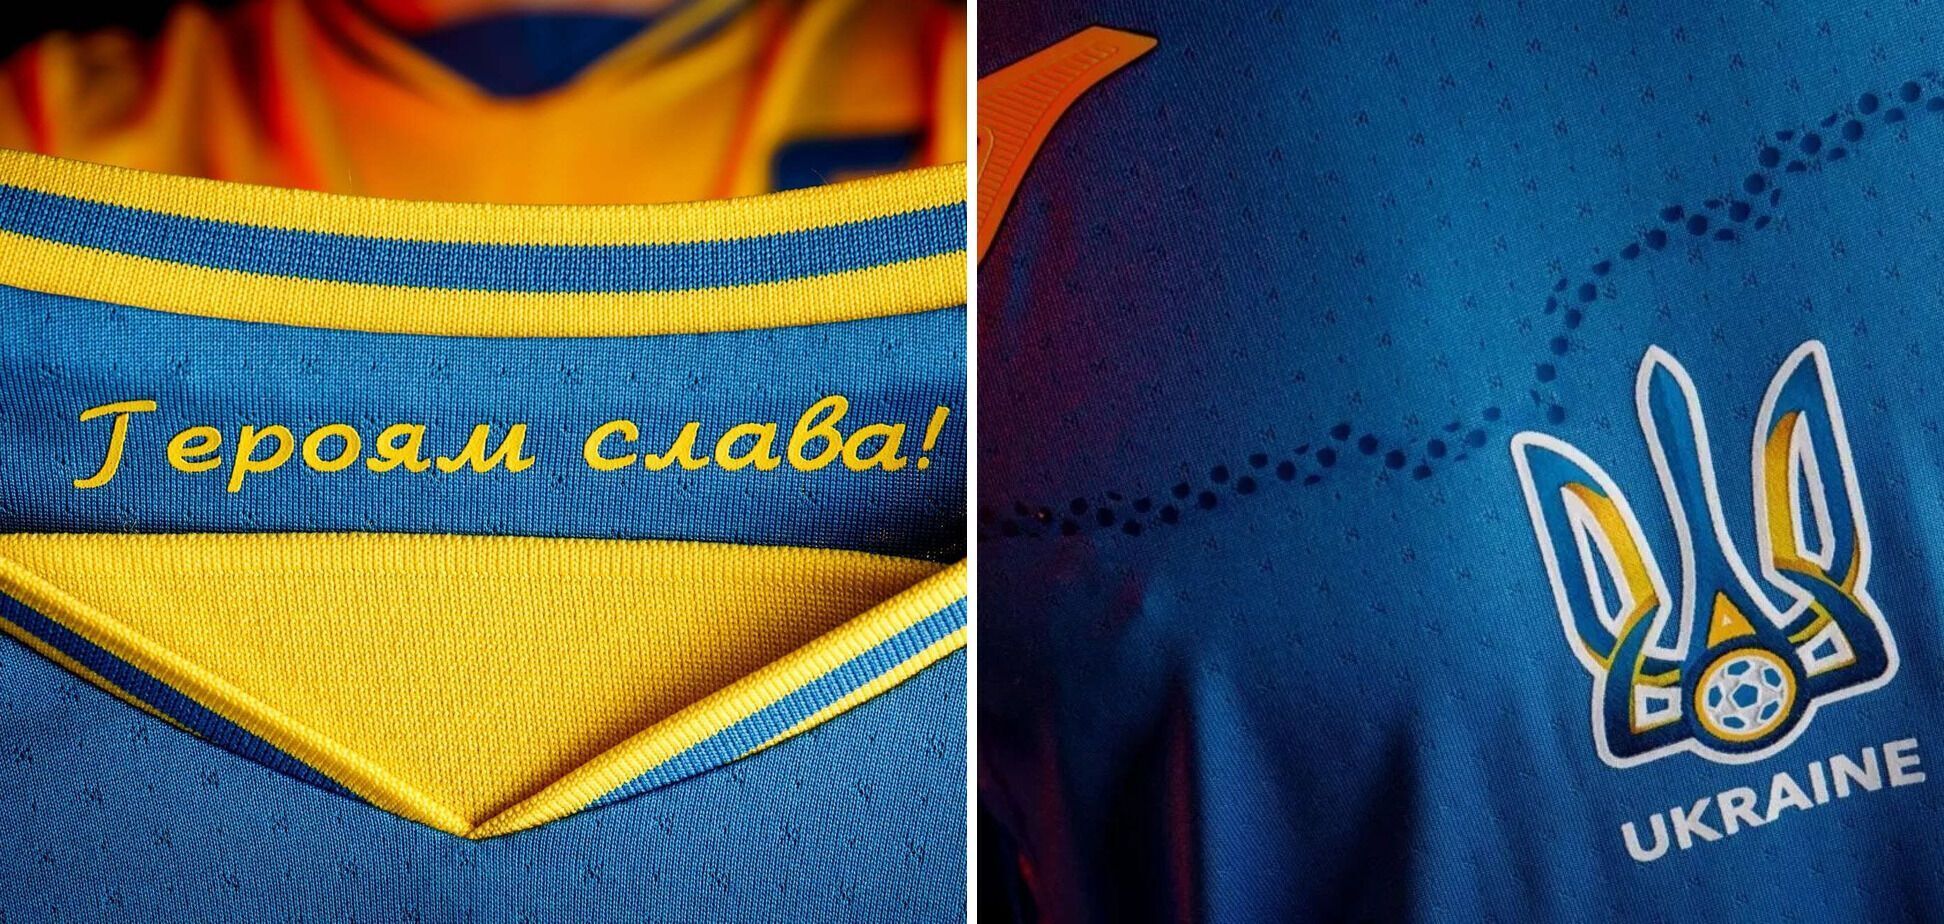 Надпись "Героям слава!" на форме сборной Украины